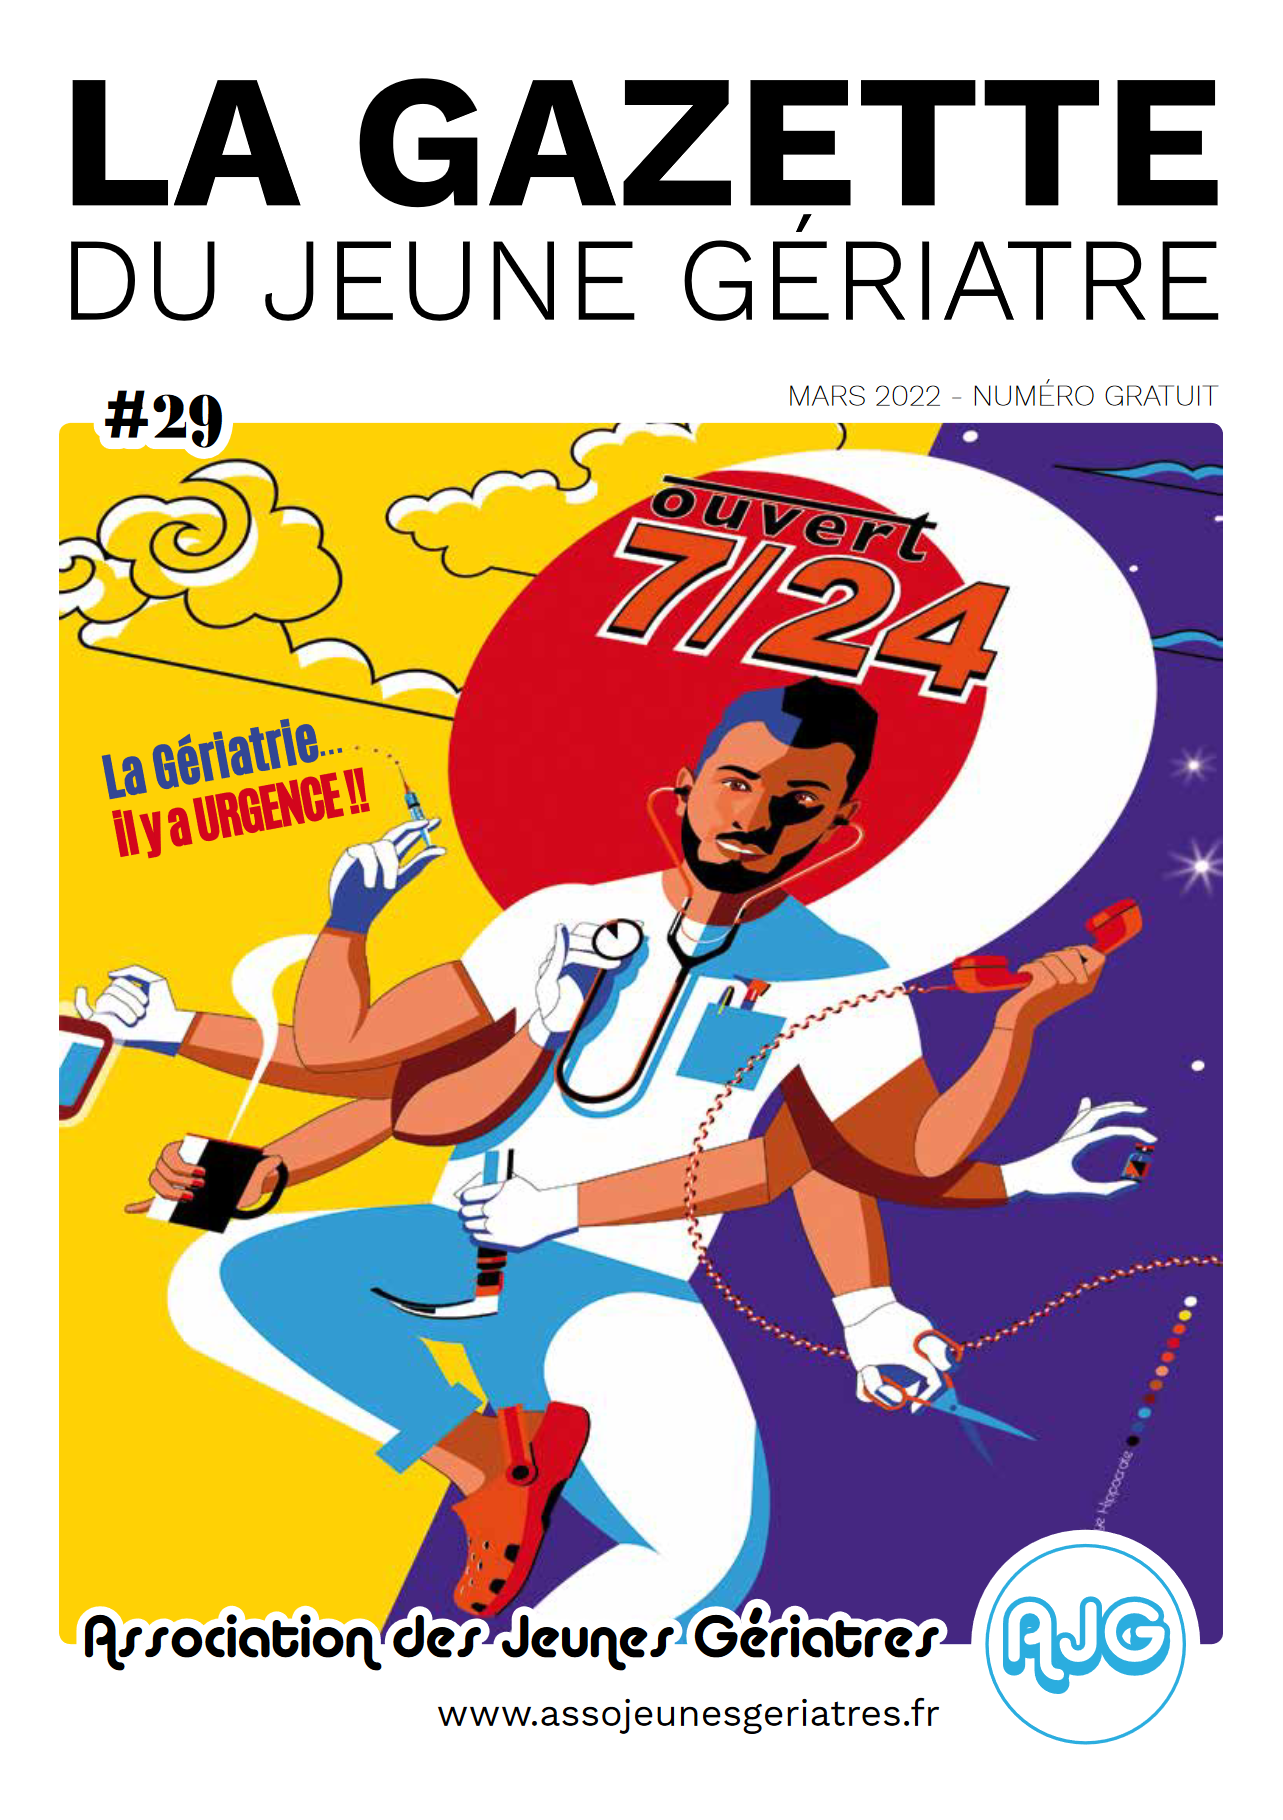 Couverture du magazine La Gazette du jeune gériatre mars 2022 faite par Good Bye Hippocrate.